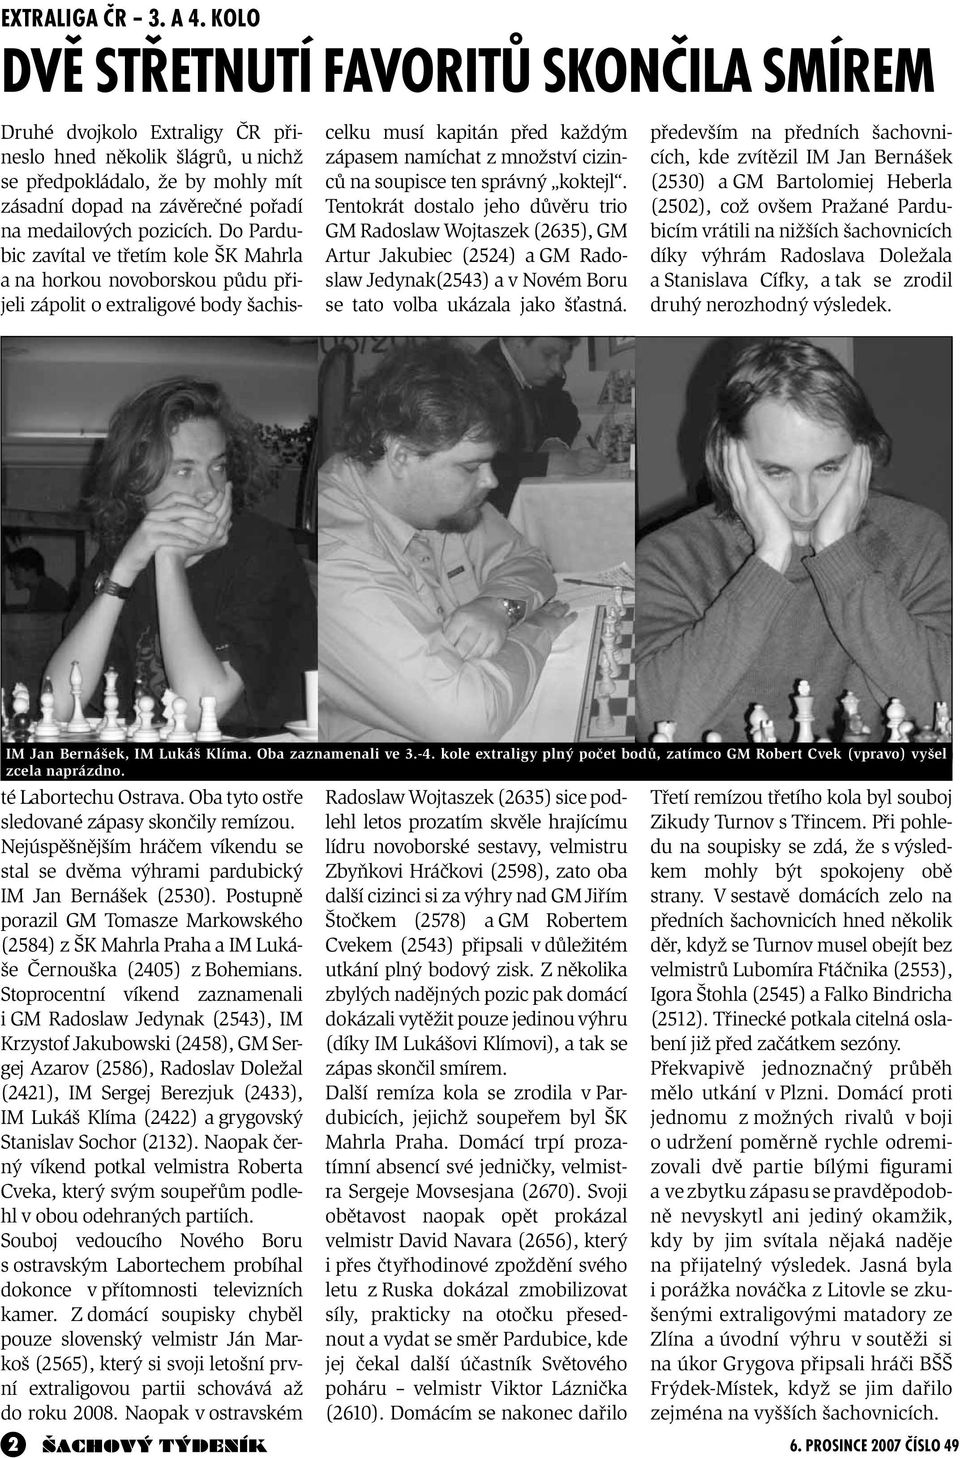 především na předních šachovnicích, kde zvítězil IM Jan Bernášek (2530) a GM Bartolomiej Heberla (2502), což ovšem Pražané Pardubicím vrátili na nižších šachovnicích díky výhrám Radoslava Doležala a